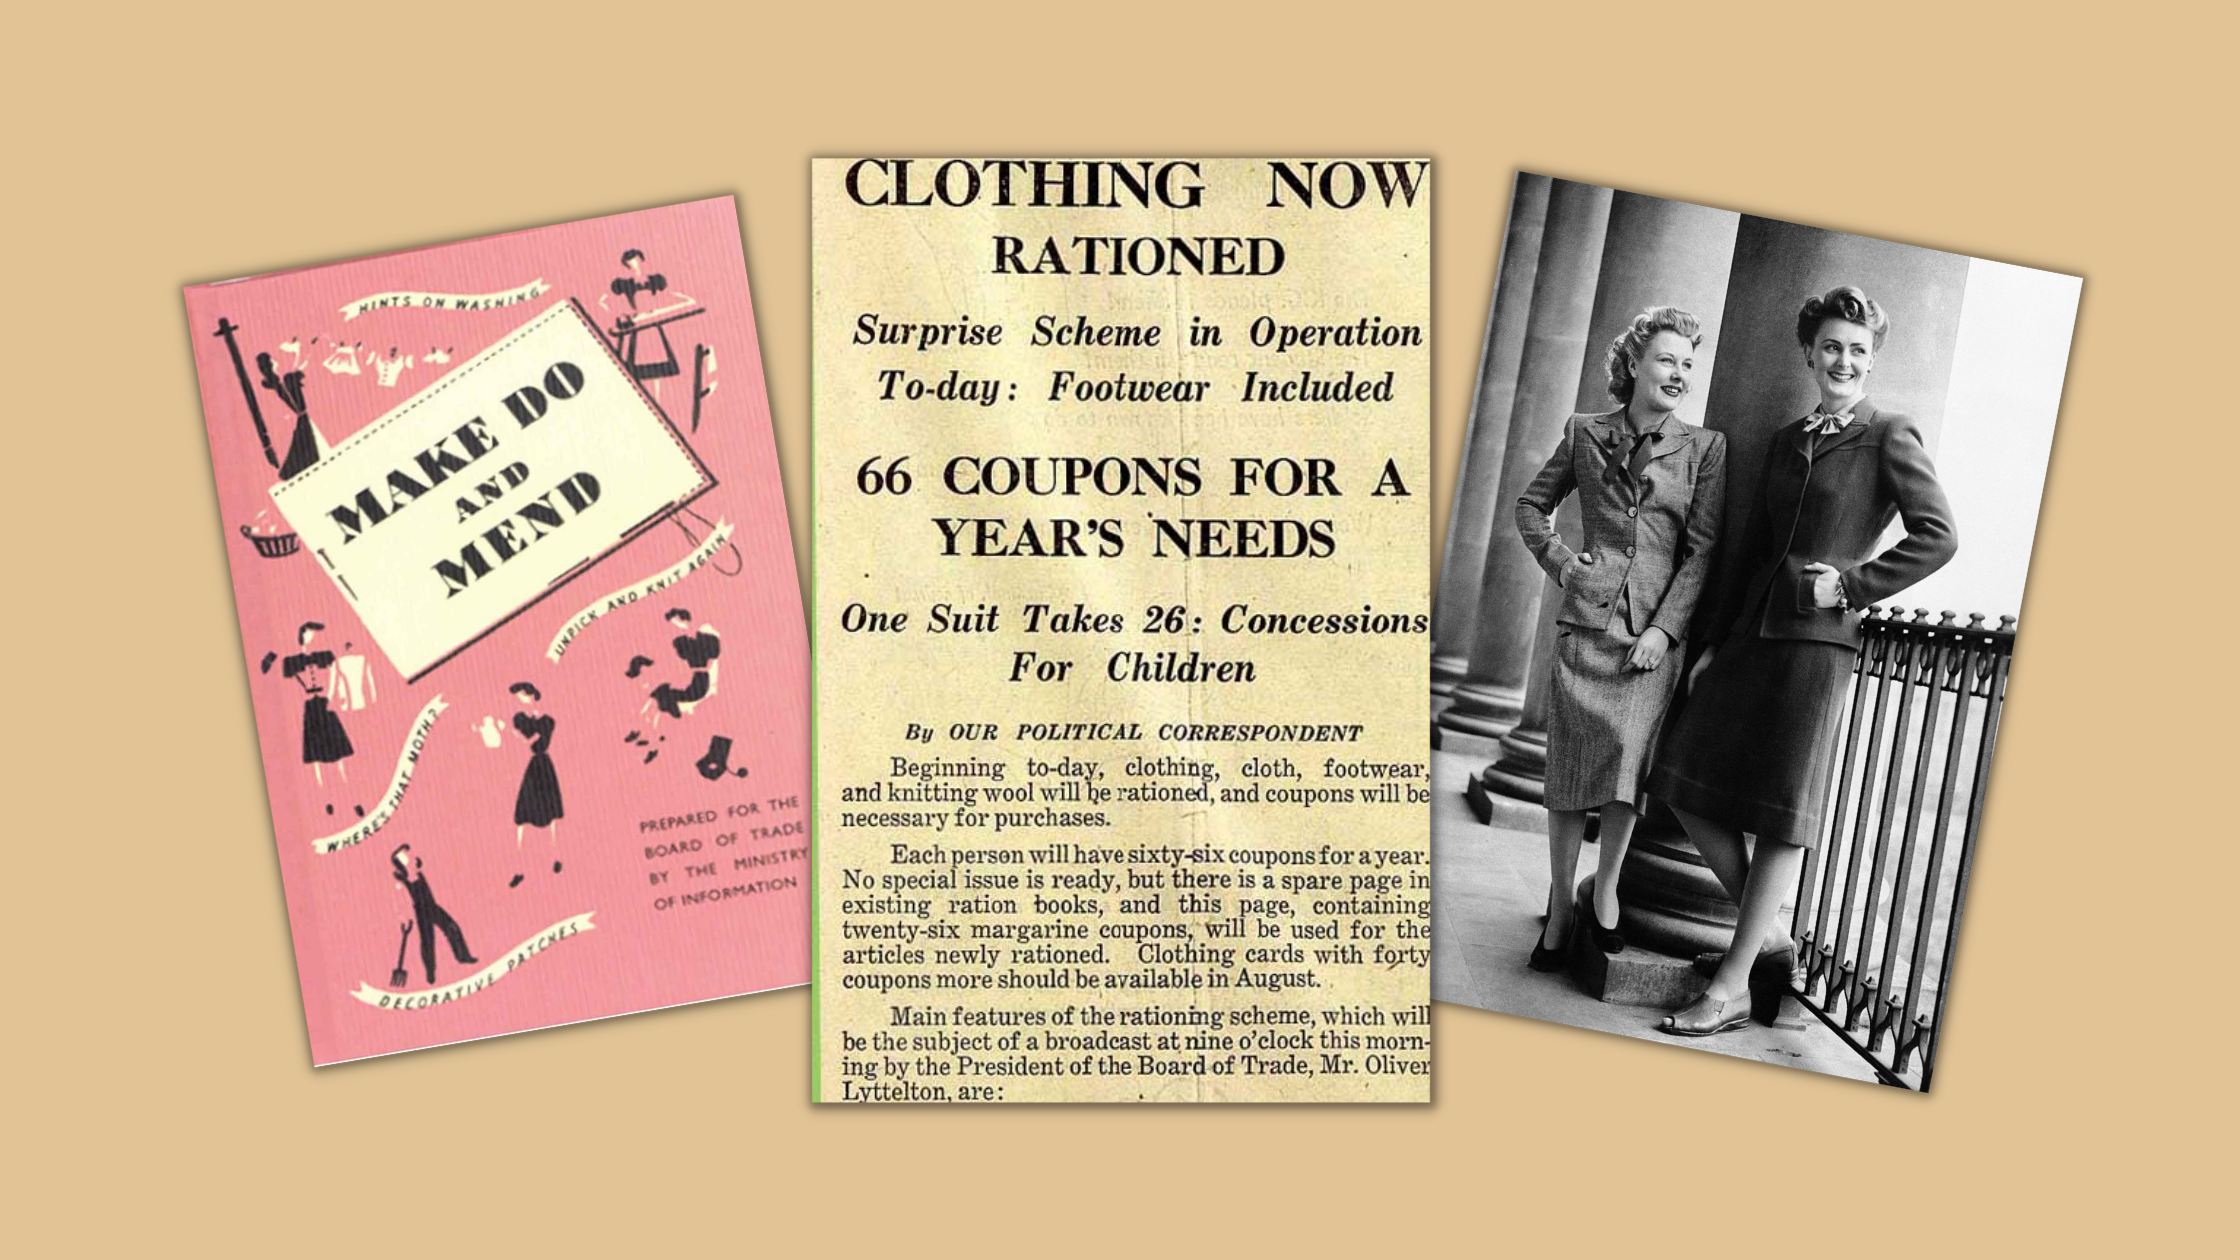 1940s fashion, British Utility dresses, WWII rationing